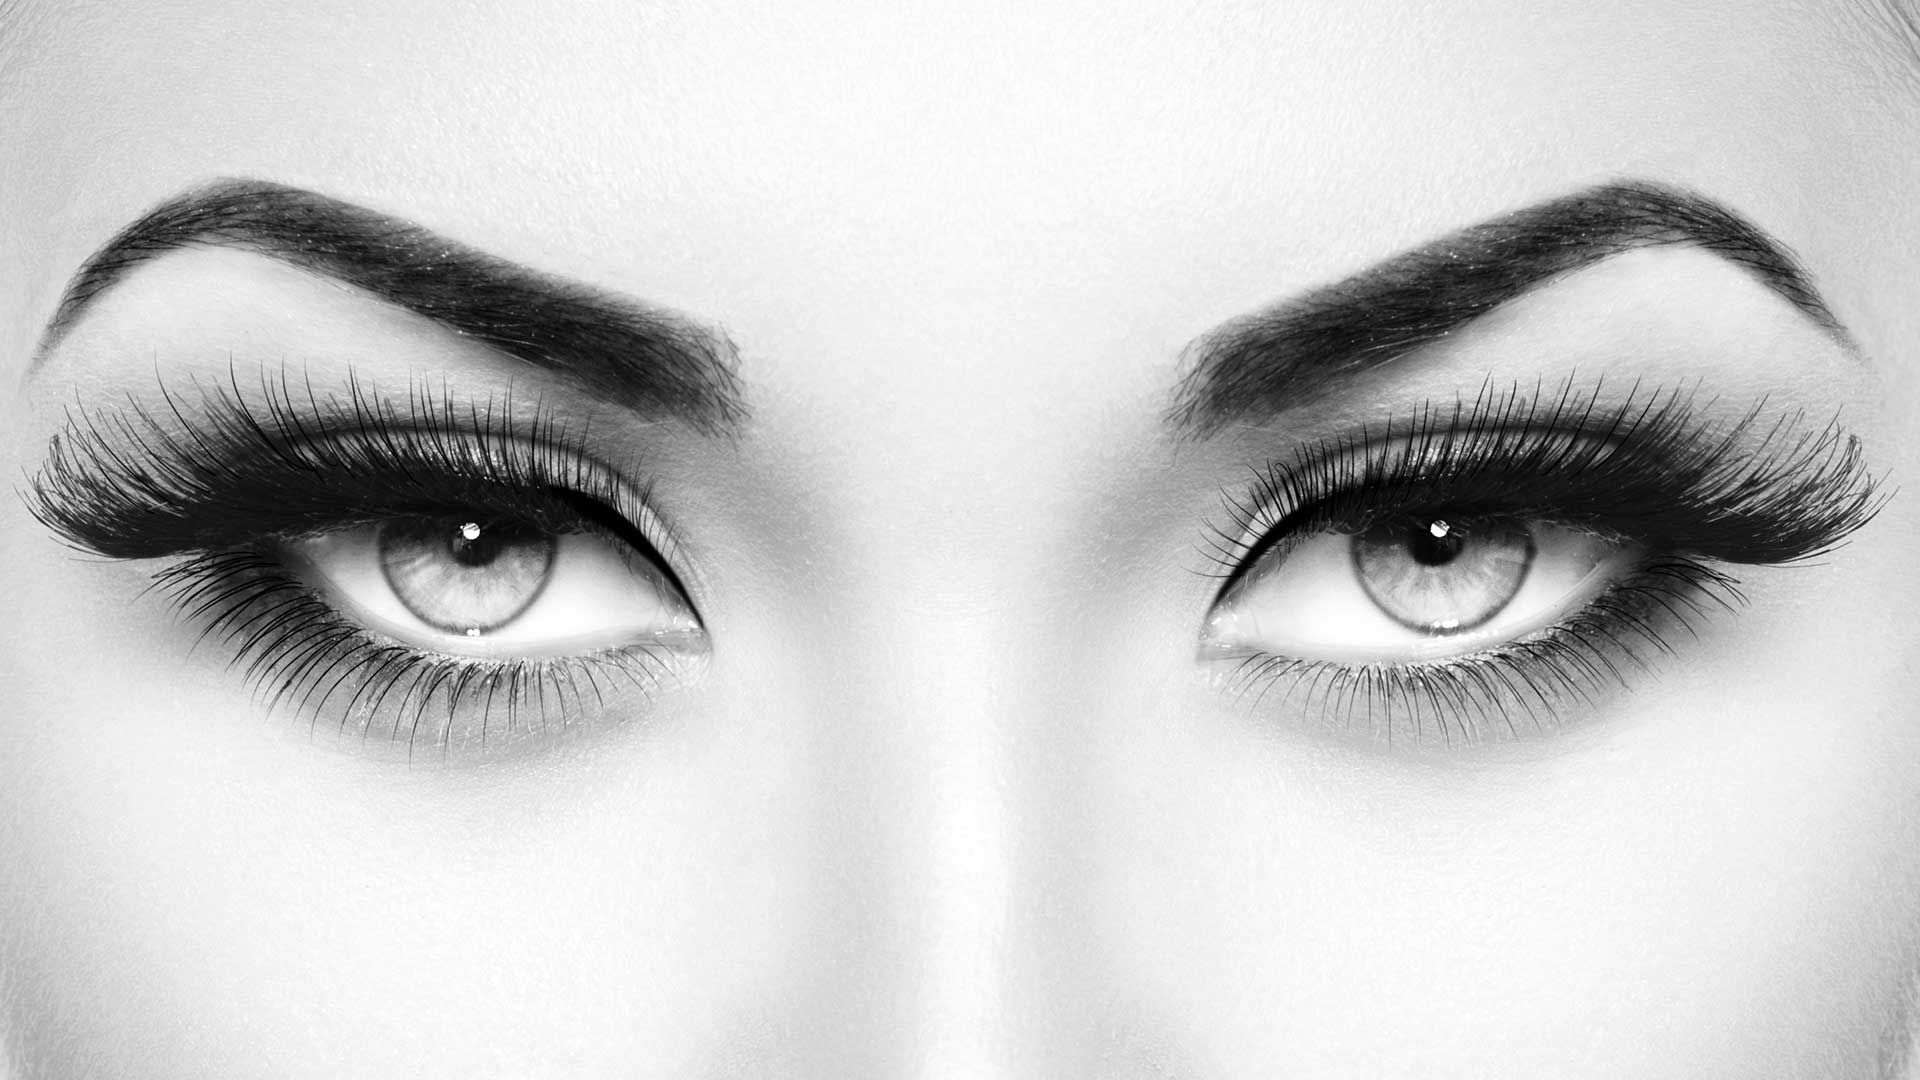 Utsnitt av øyne med vippeextensions og velformede bryn